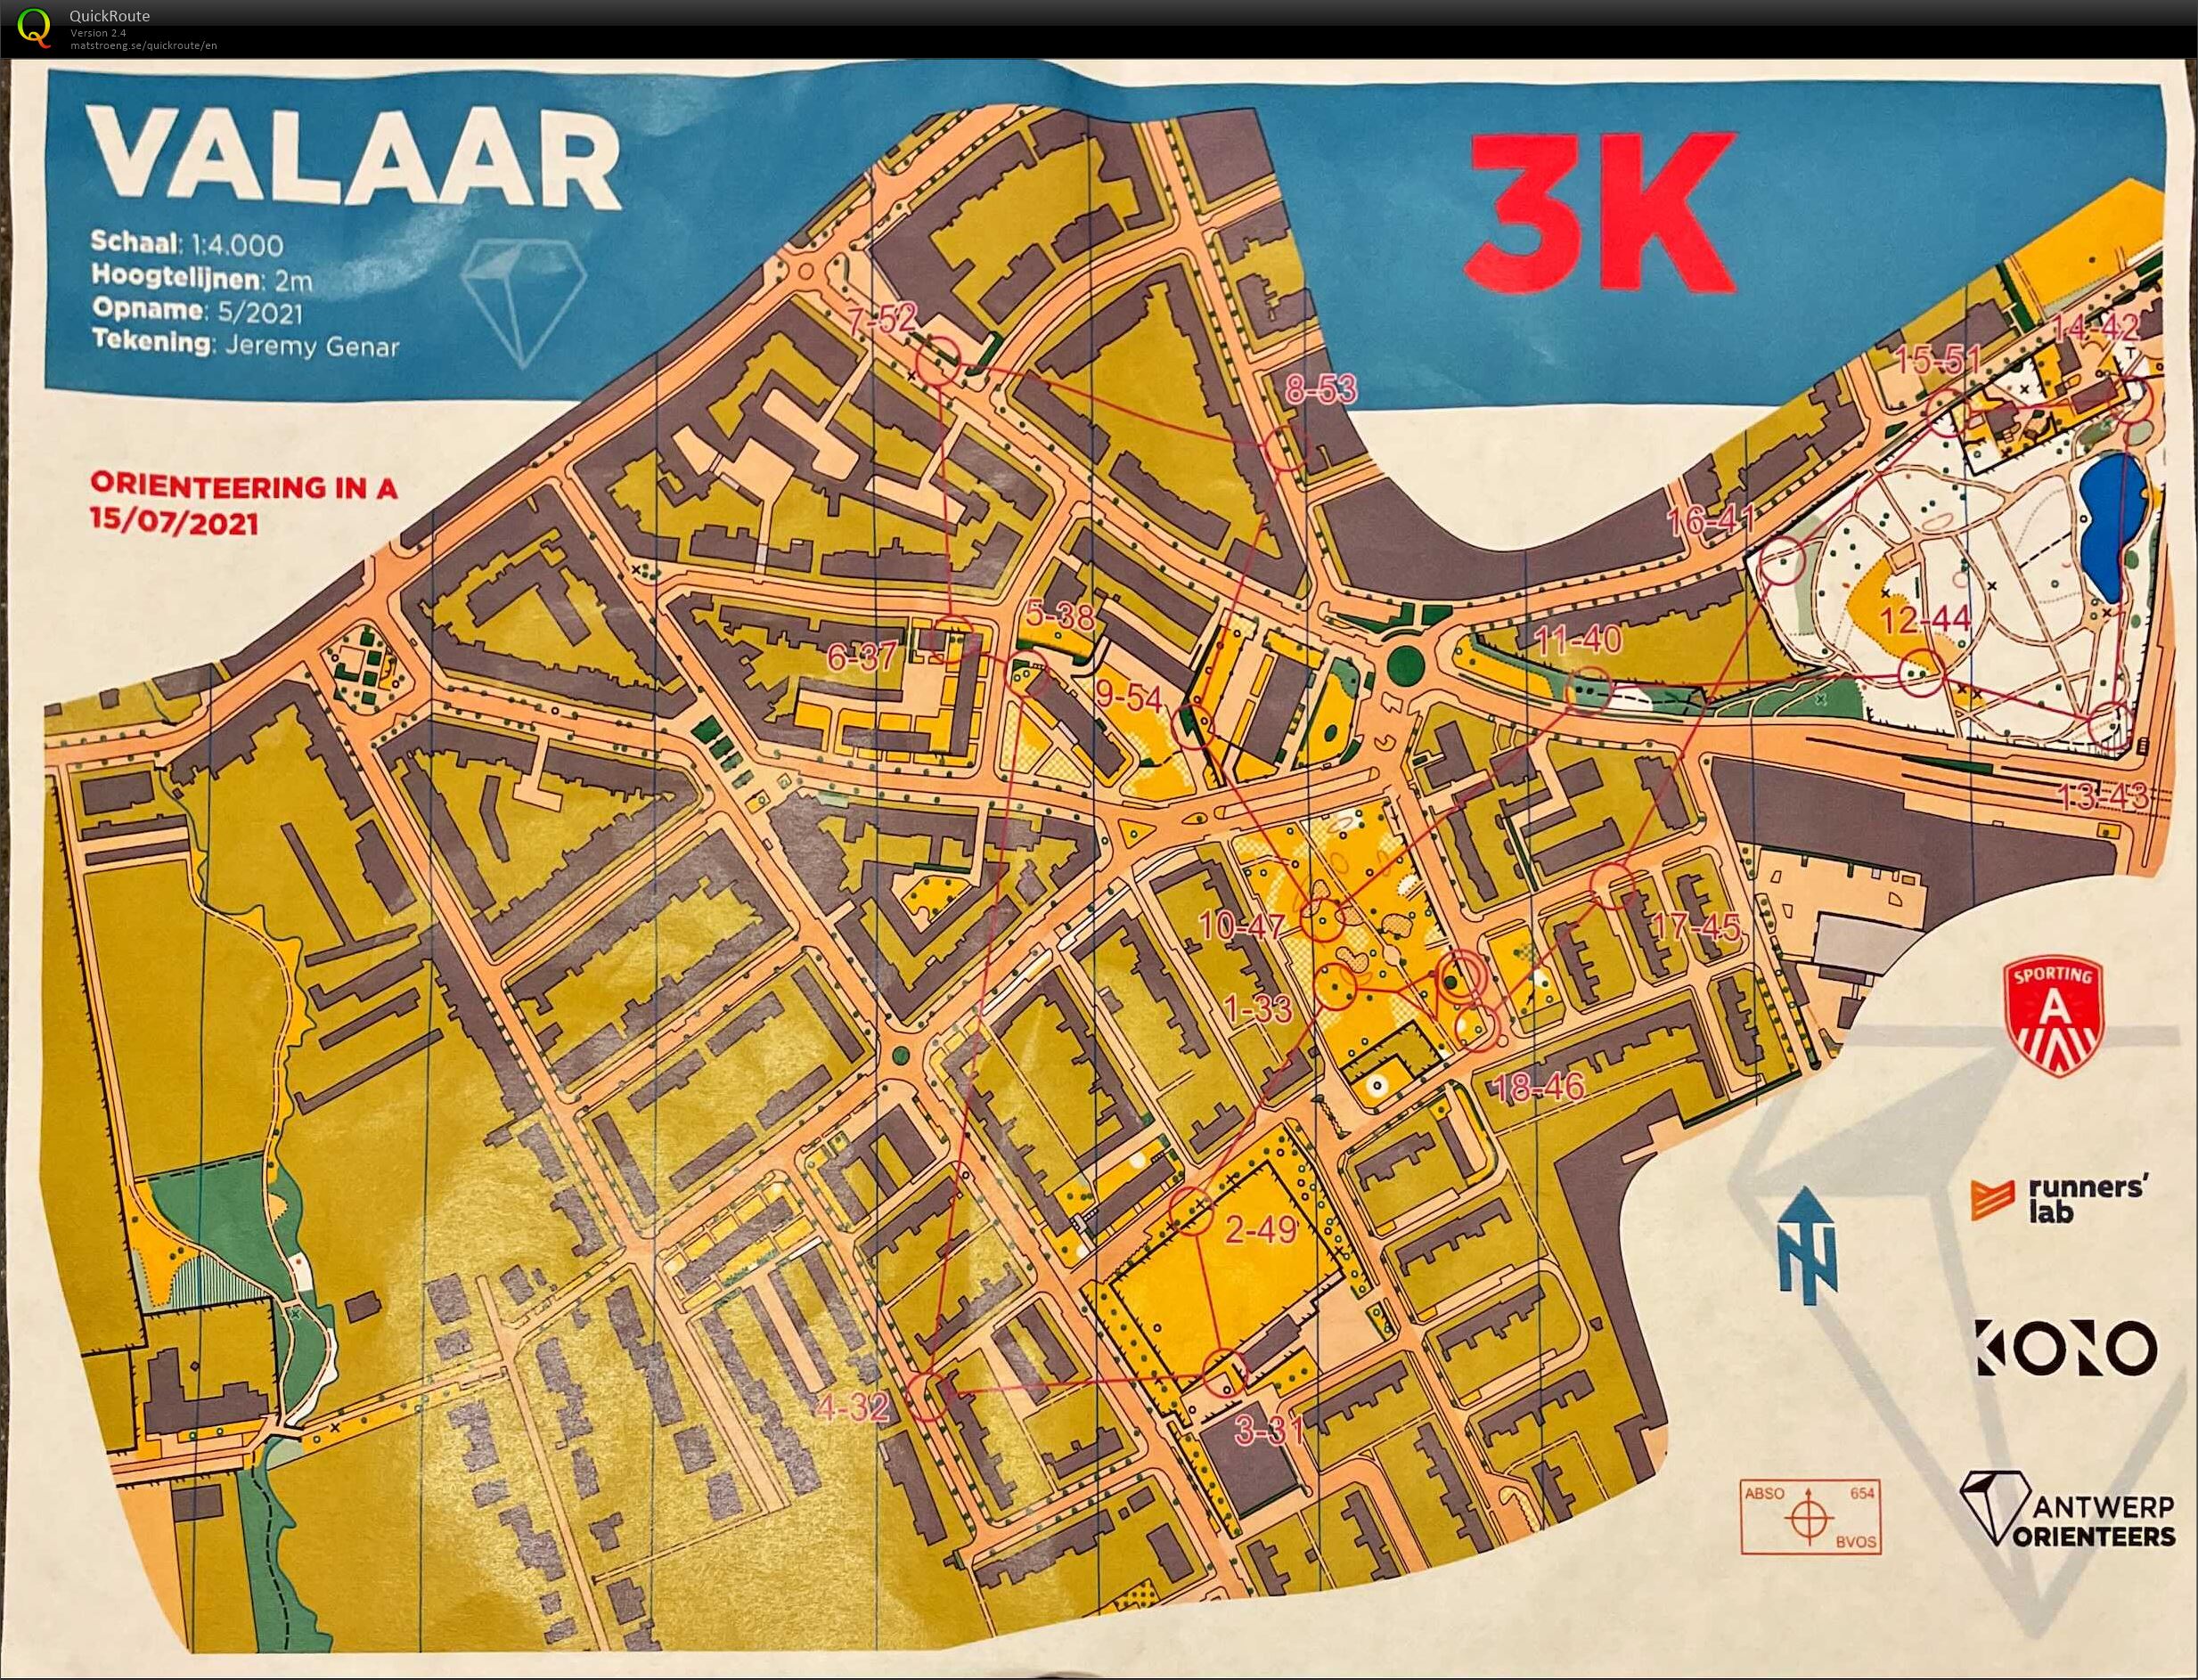 Orienteering in A - Wilrijk Valaar - 3K (15.07.2021)